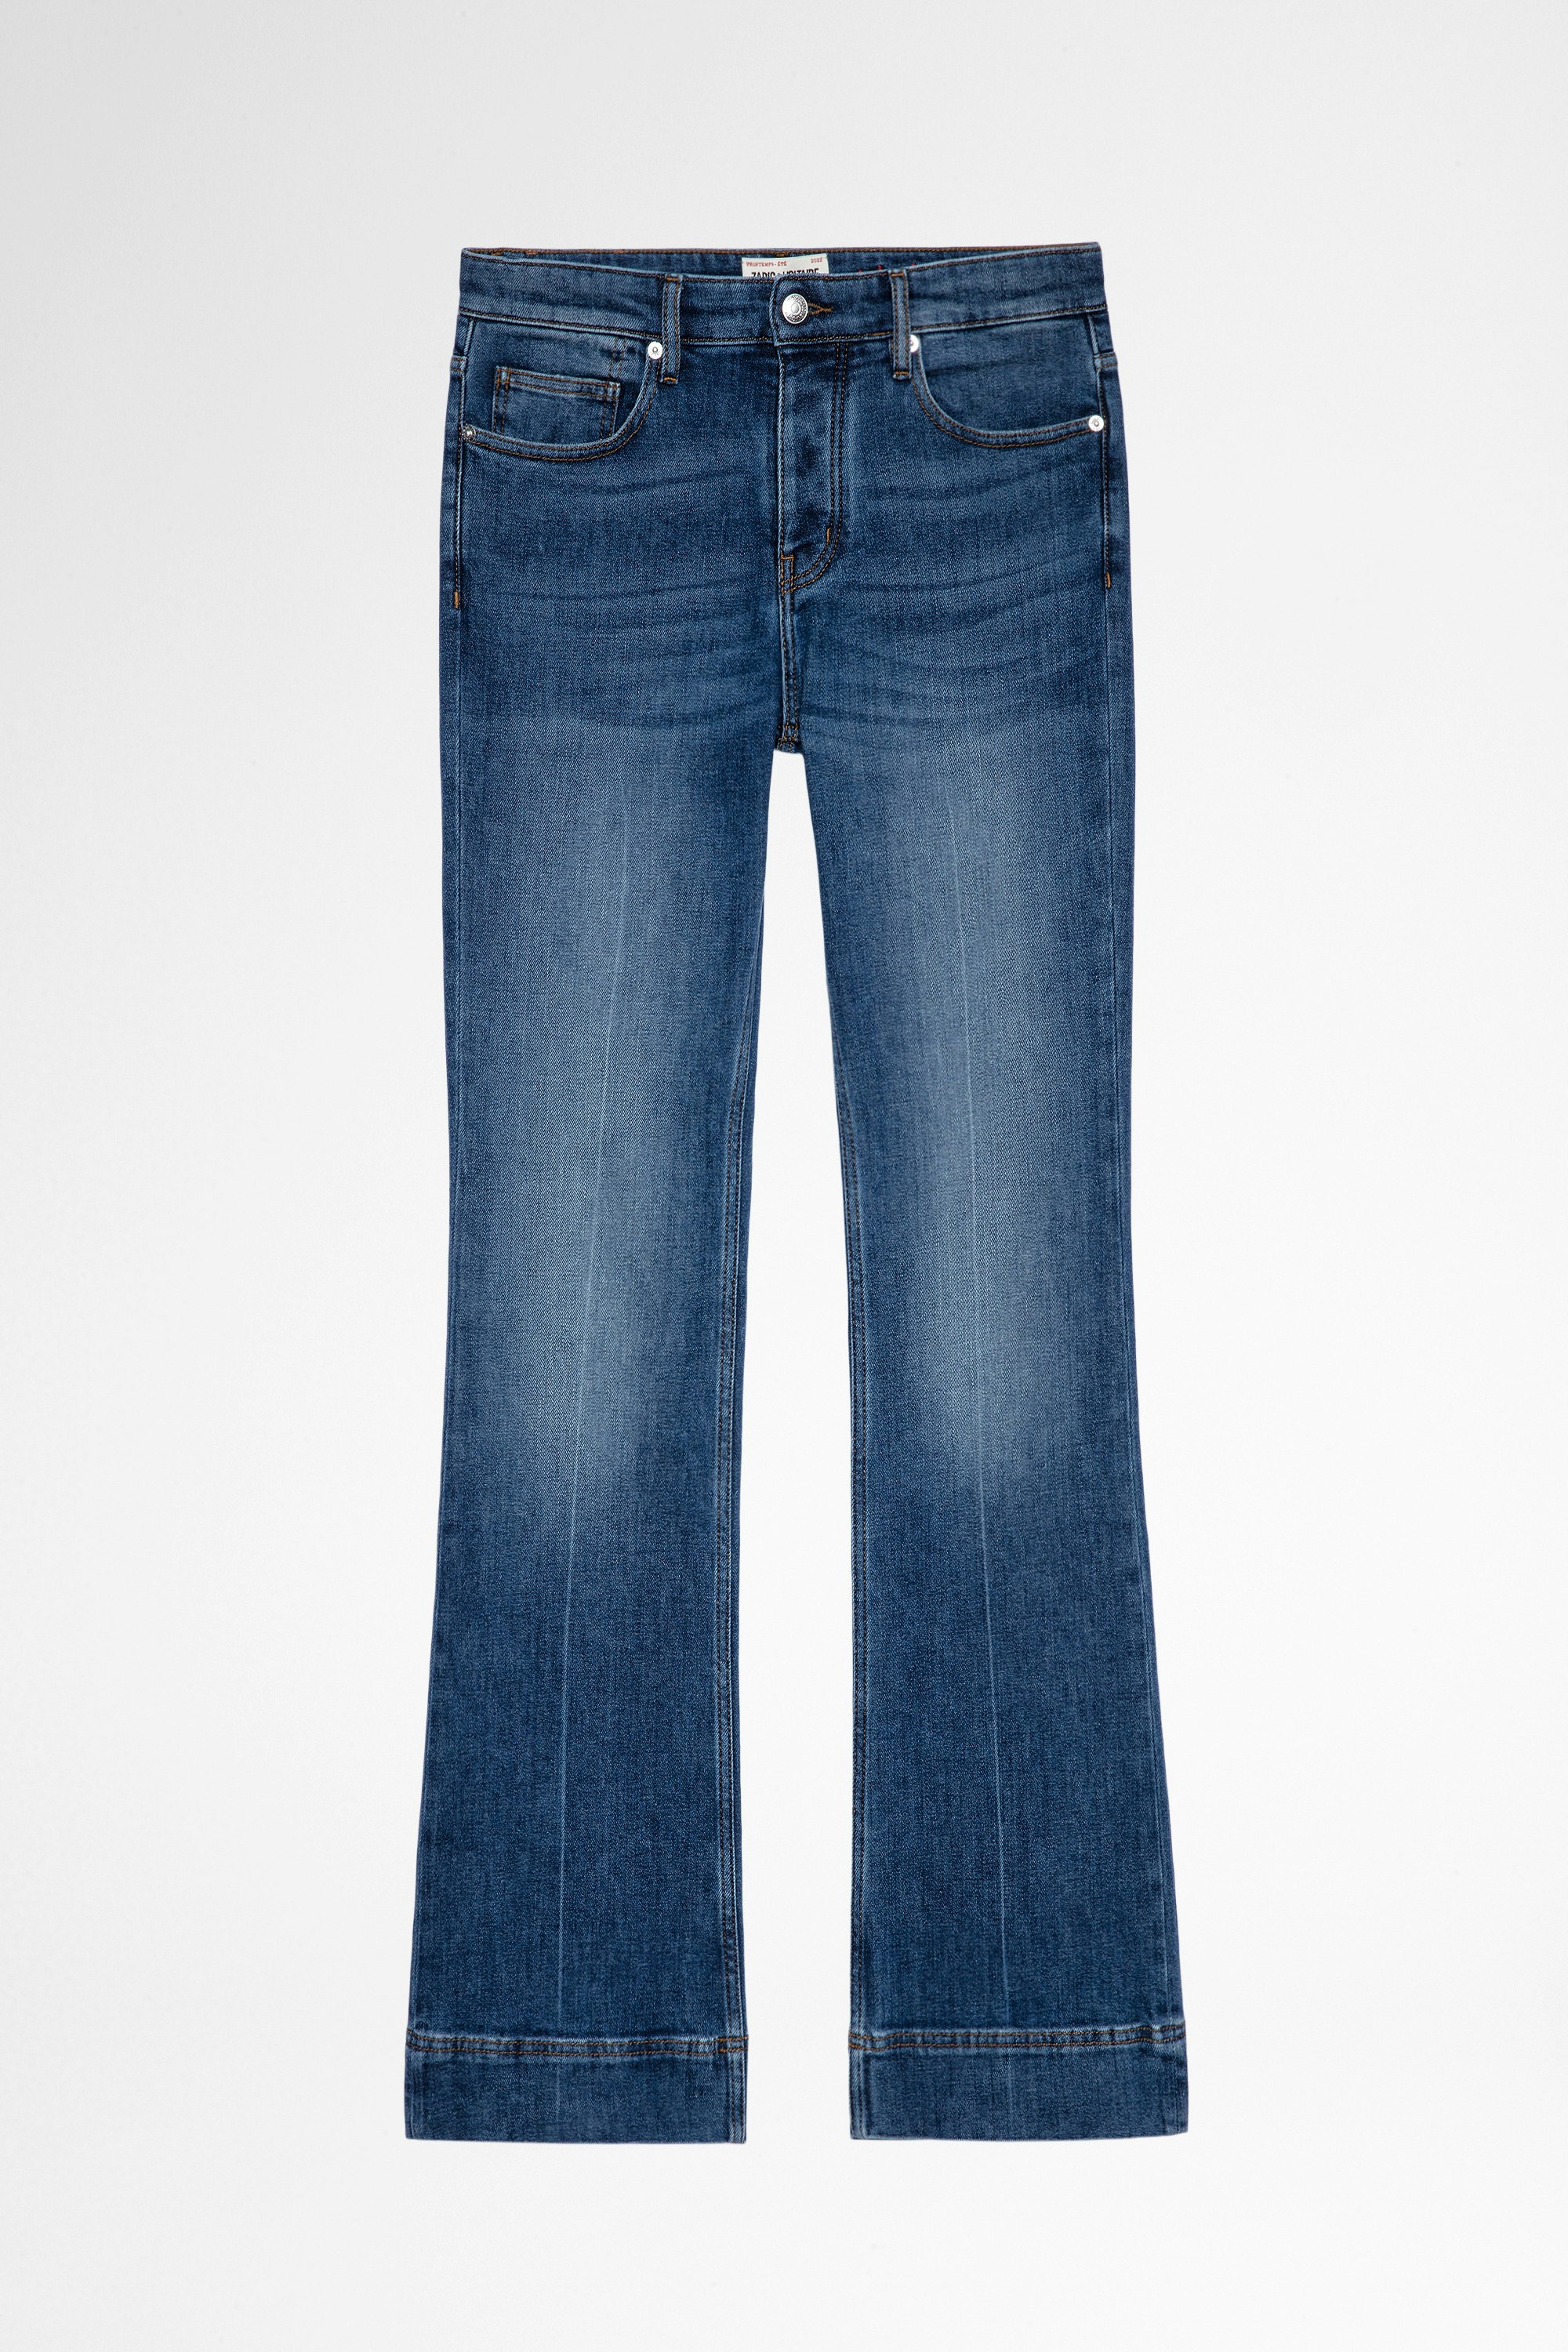 Jeans Vincente Jeans svasati in denim blu délavé, donna. Realizzato con fibre reciclate